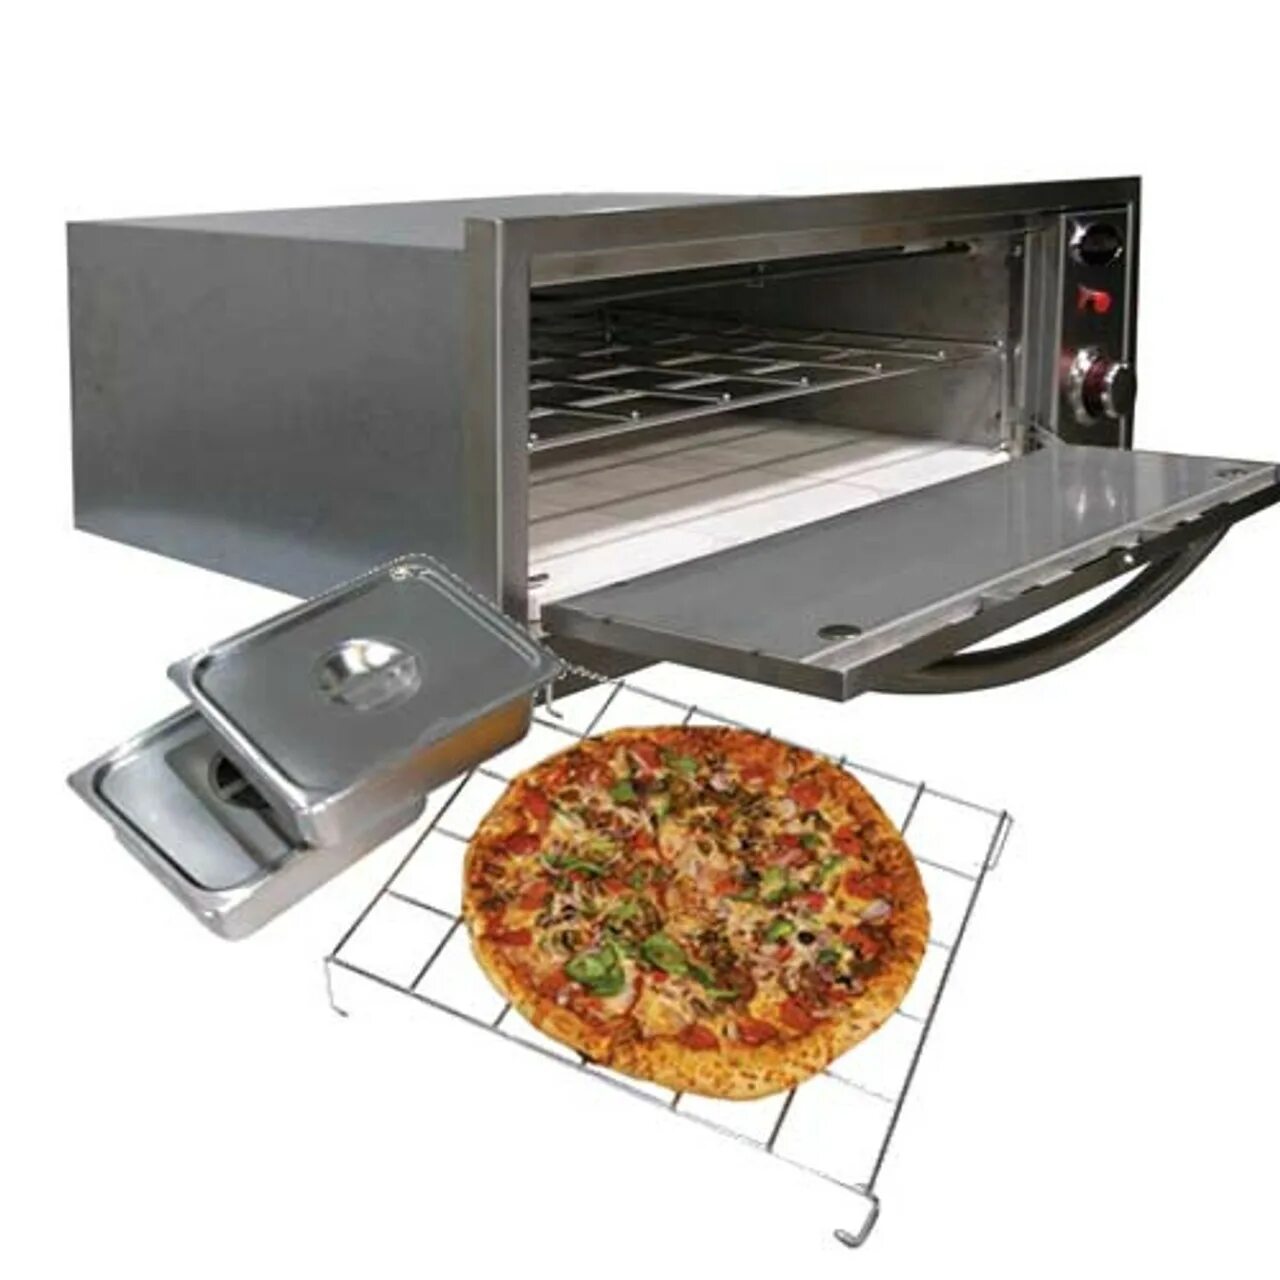 Stadler made Outdoor Oven. Amp грили mg200. Печь для пиццы электрическая. Sf1 печь. Купить духовку для пиццы